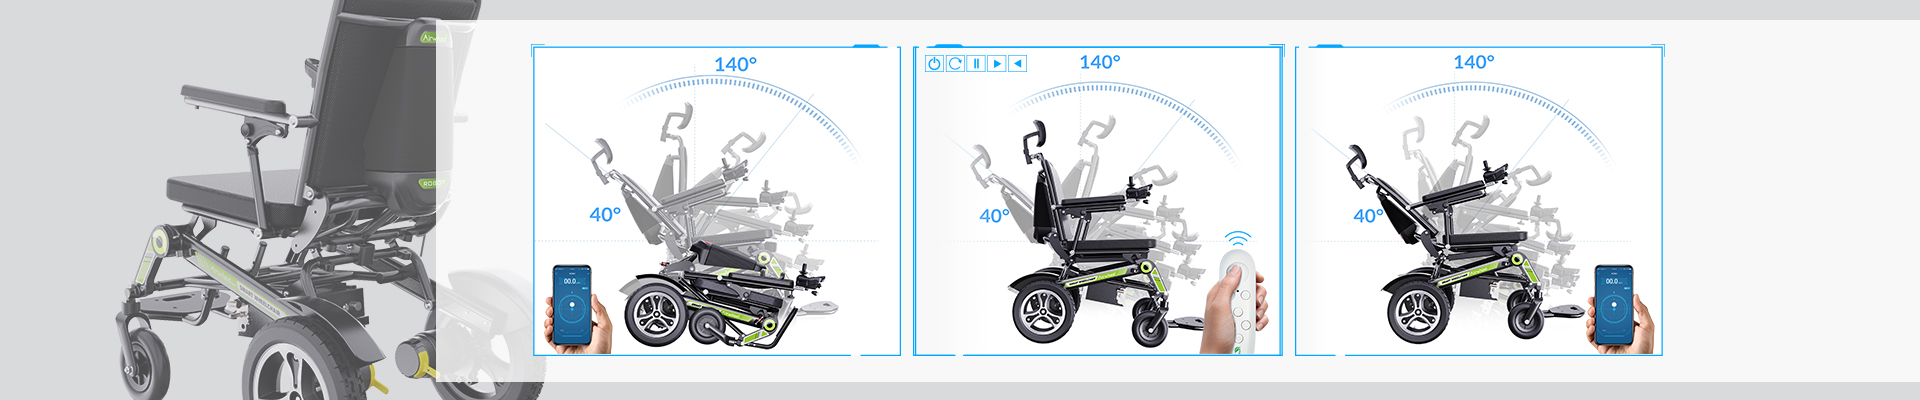 Airwheel H3TS+ smart wheelchair